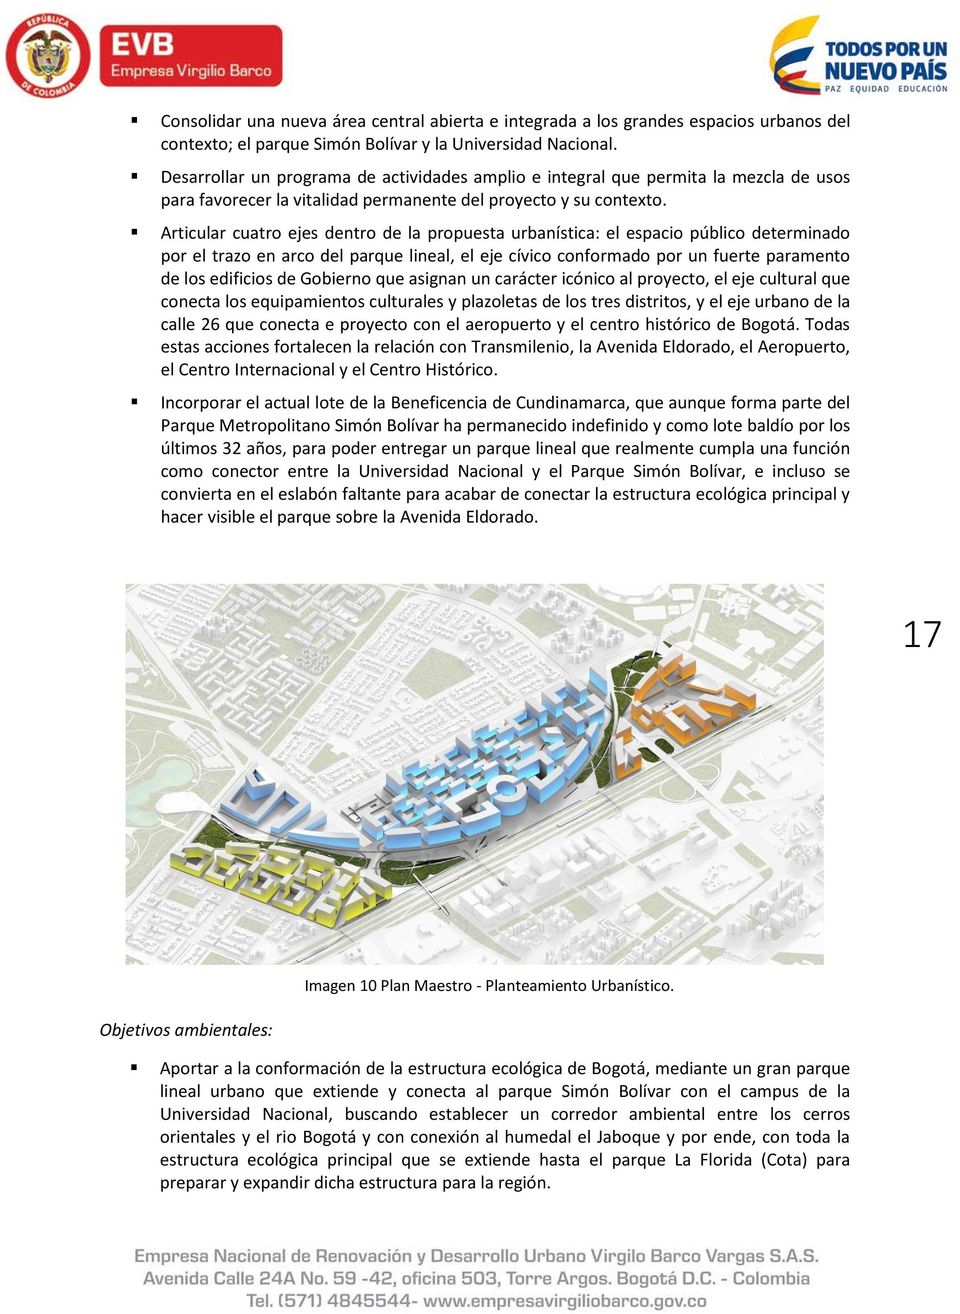 Articular cuatro ejes dentro de la propuesta urbanística: el espacio público determinado por el trazo en arco del parque lineal, el eje cívico conformado por un fuerte paramento de los edificios de